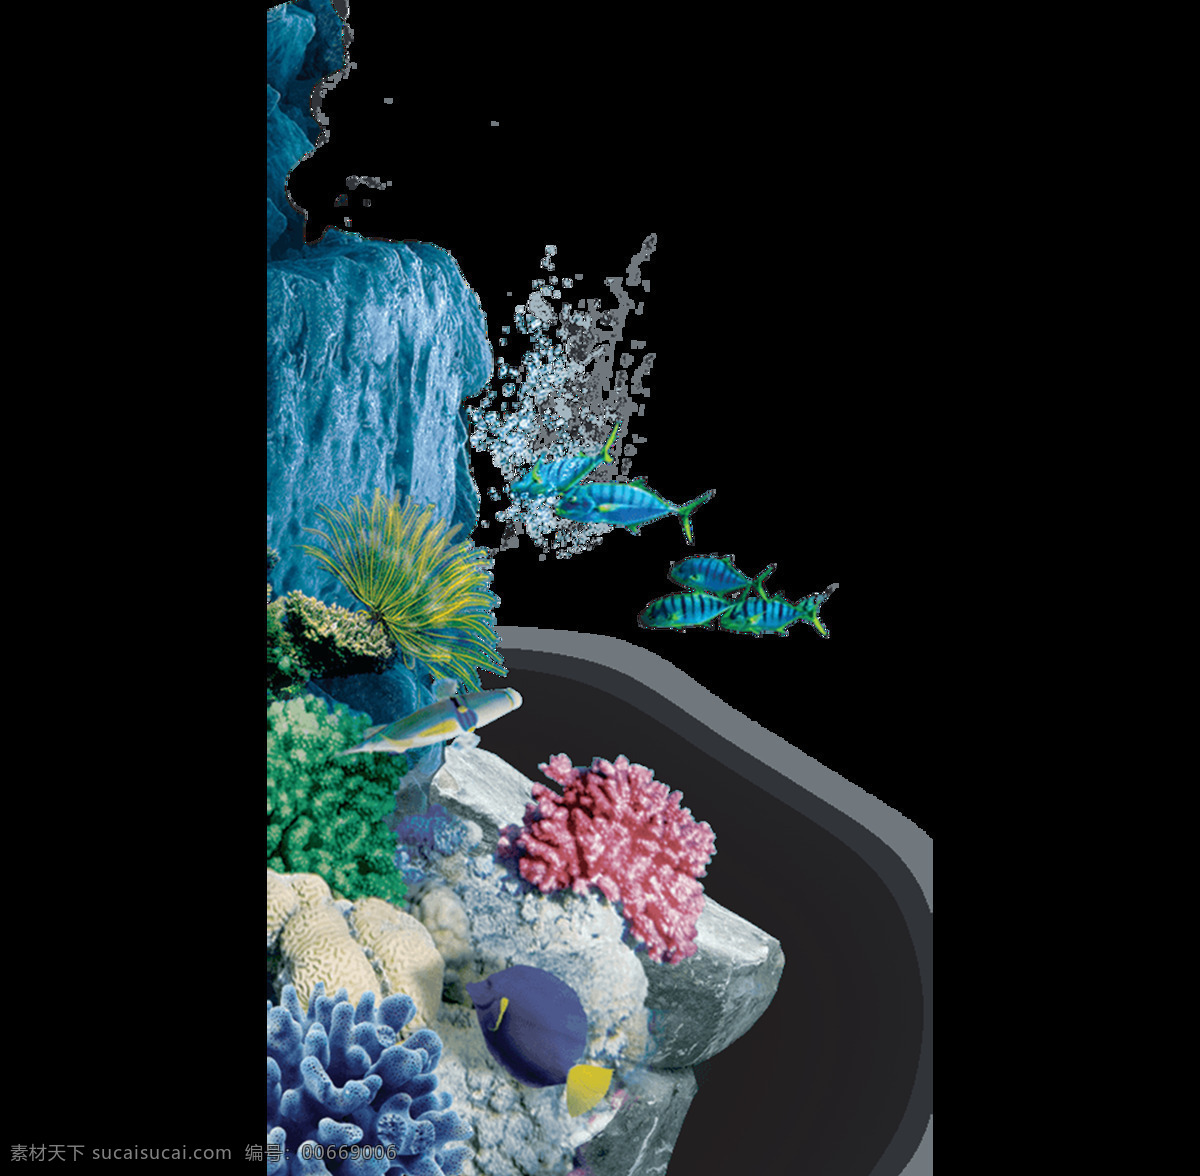 海底 生物 景象 元素 鱼 礁石 珊瑚